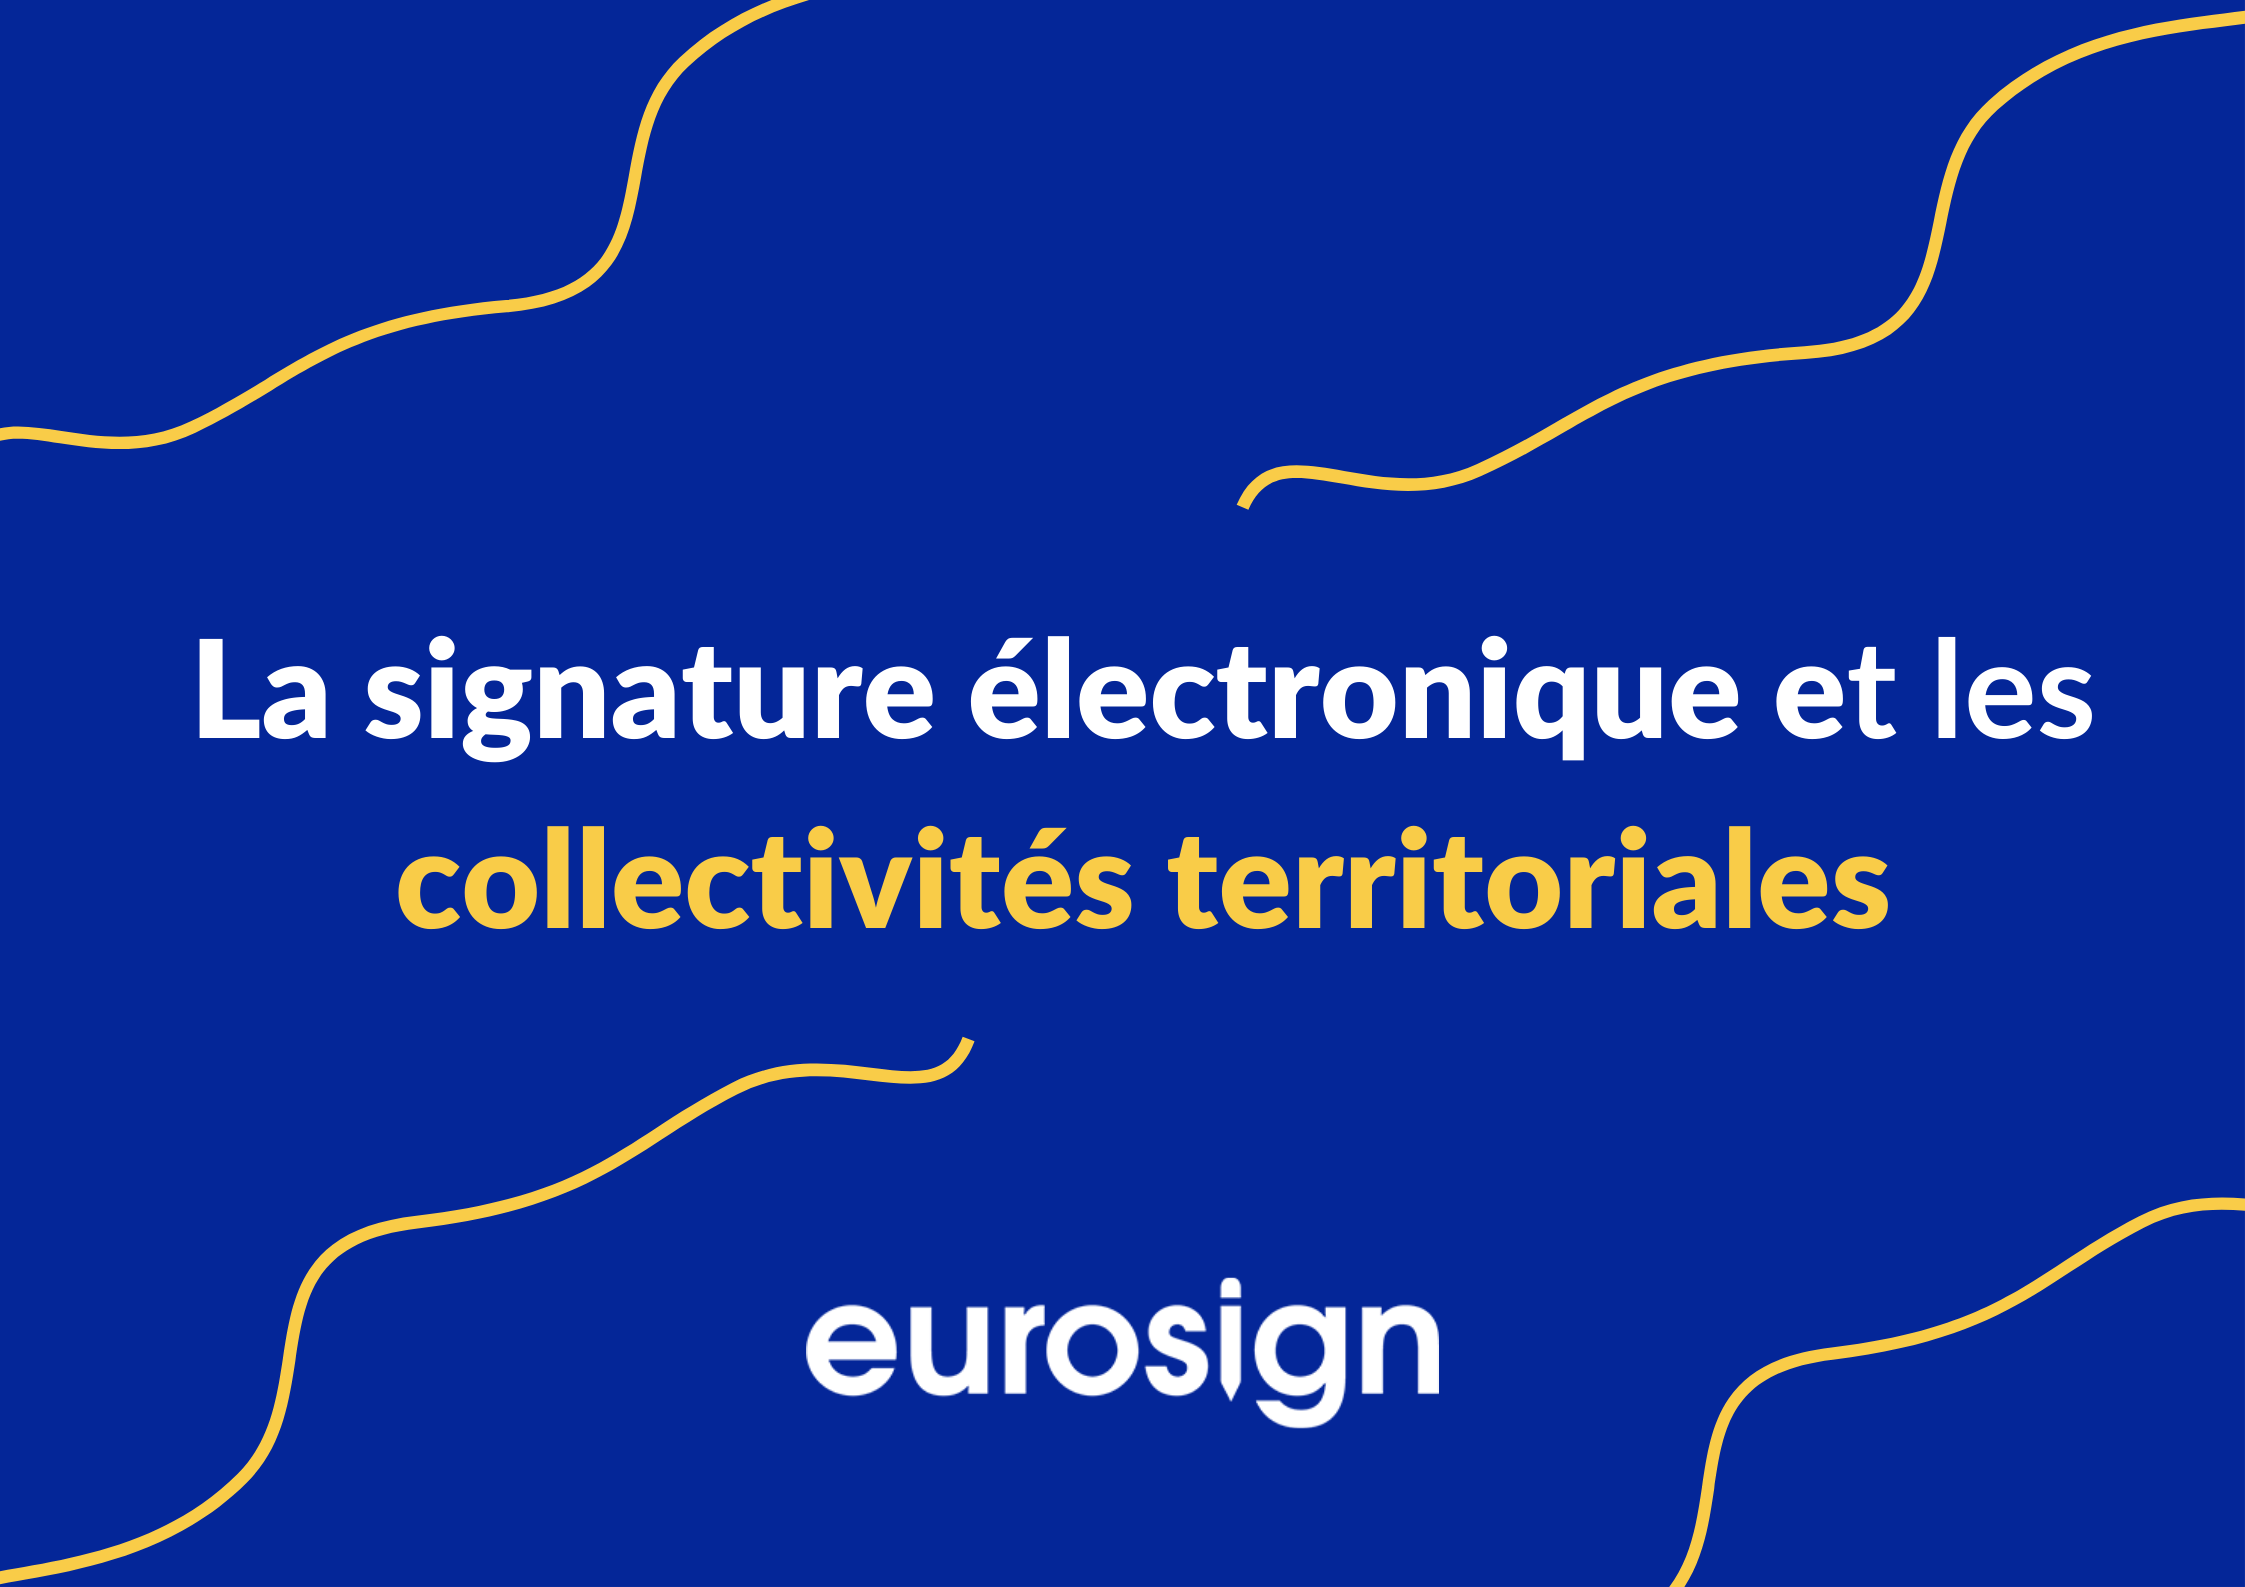 La signature électronique dans les collectivités territoriales